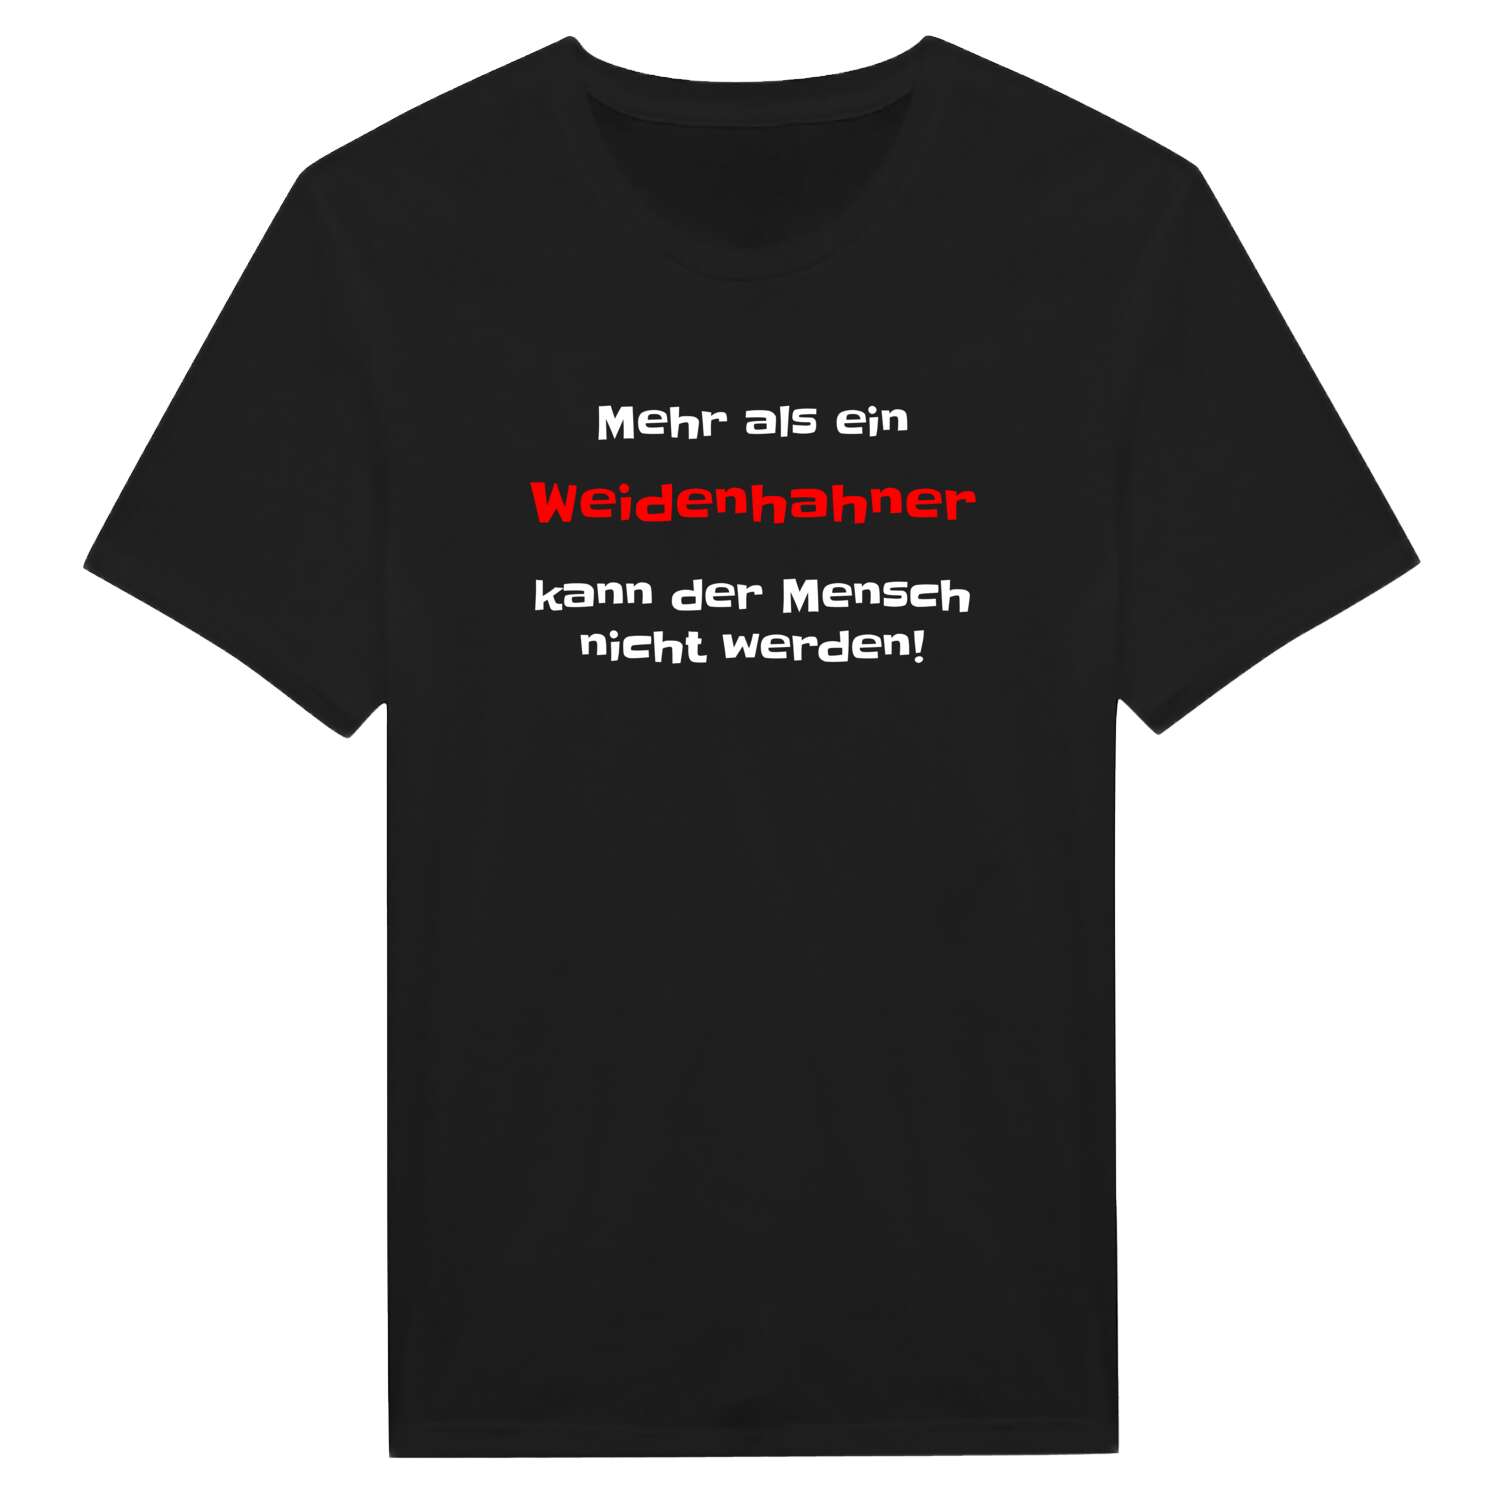 Weidenhahn T-Shirt »Mehr als ein«